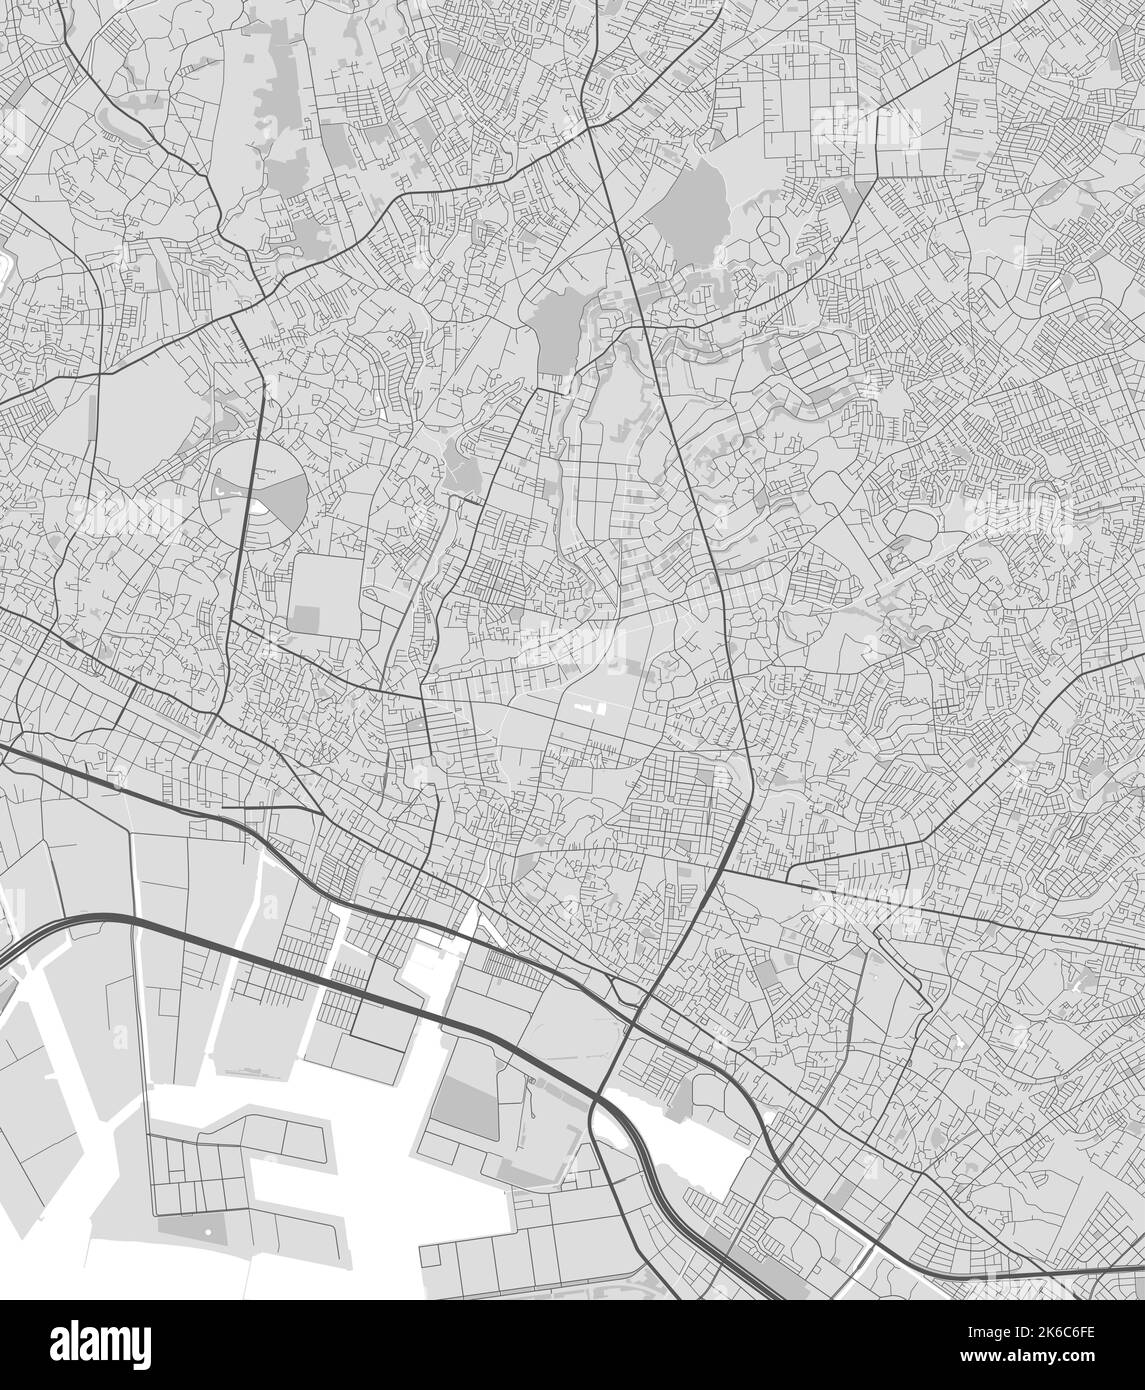 Stadtplan von Funabashi. Urbanes Schwarz-Weiß-Poster. Straßenkarte mit Ansicht der Metropolregion. Stock Vektor